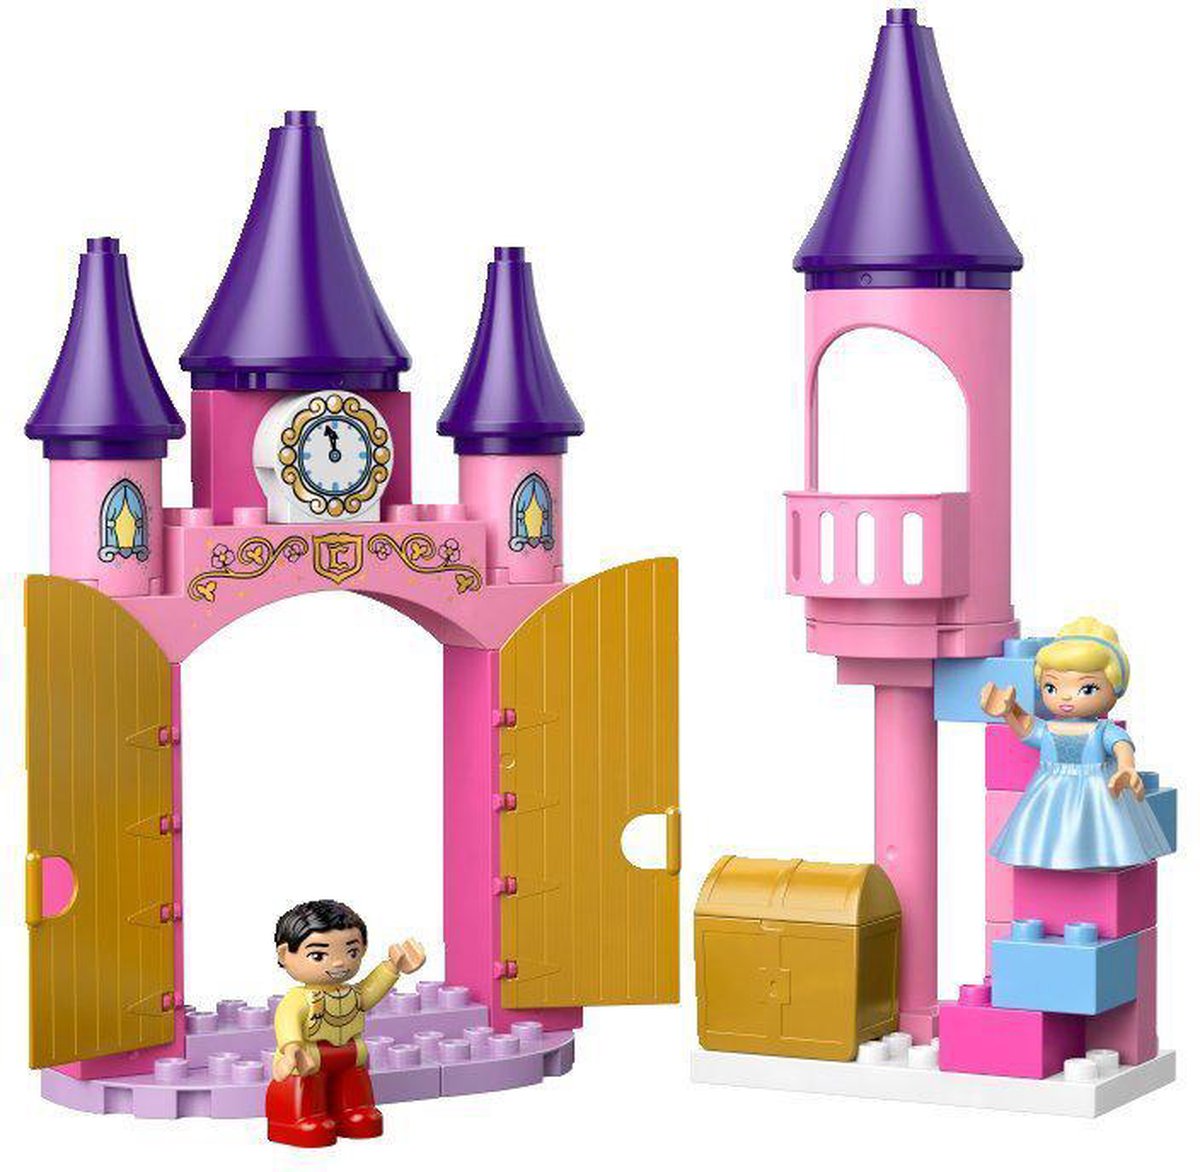 LEGO Duplo Disney Princess Assepoester's Kasteel - 6154 | bol.com